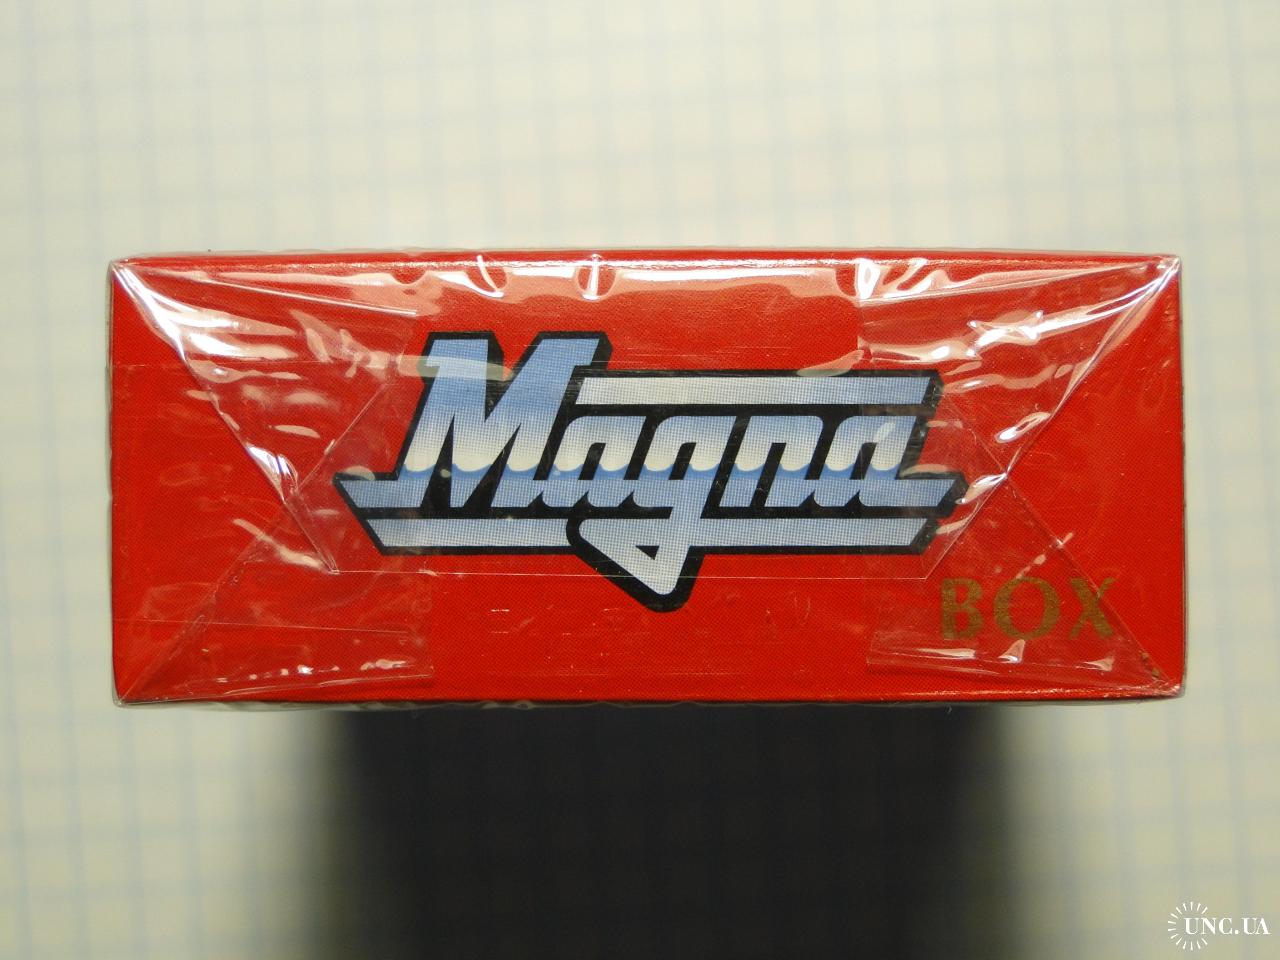 Попробовал легендарные сигареты Magna из 90-х годов: невероятная ностальгия